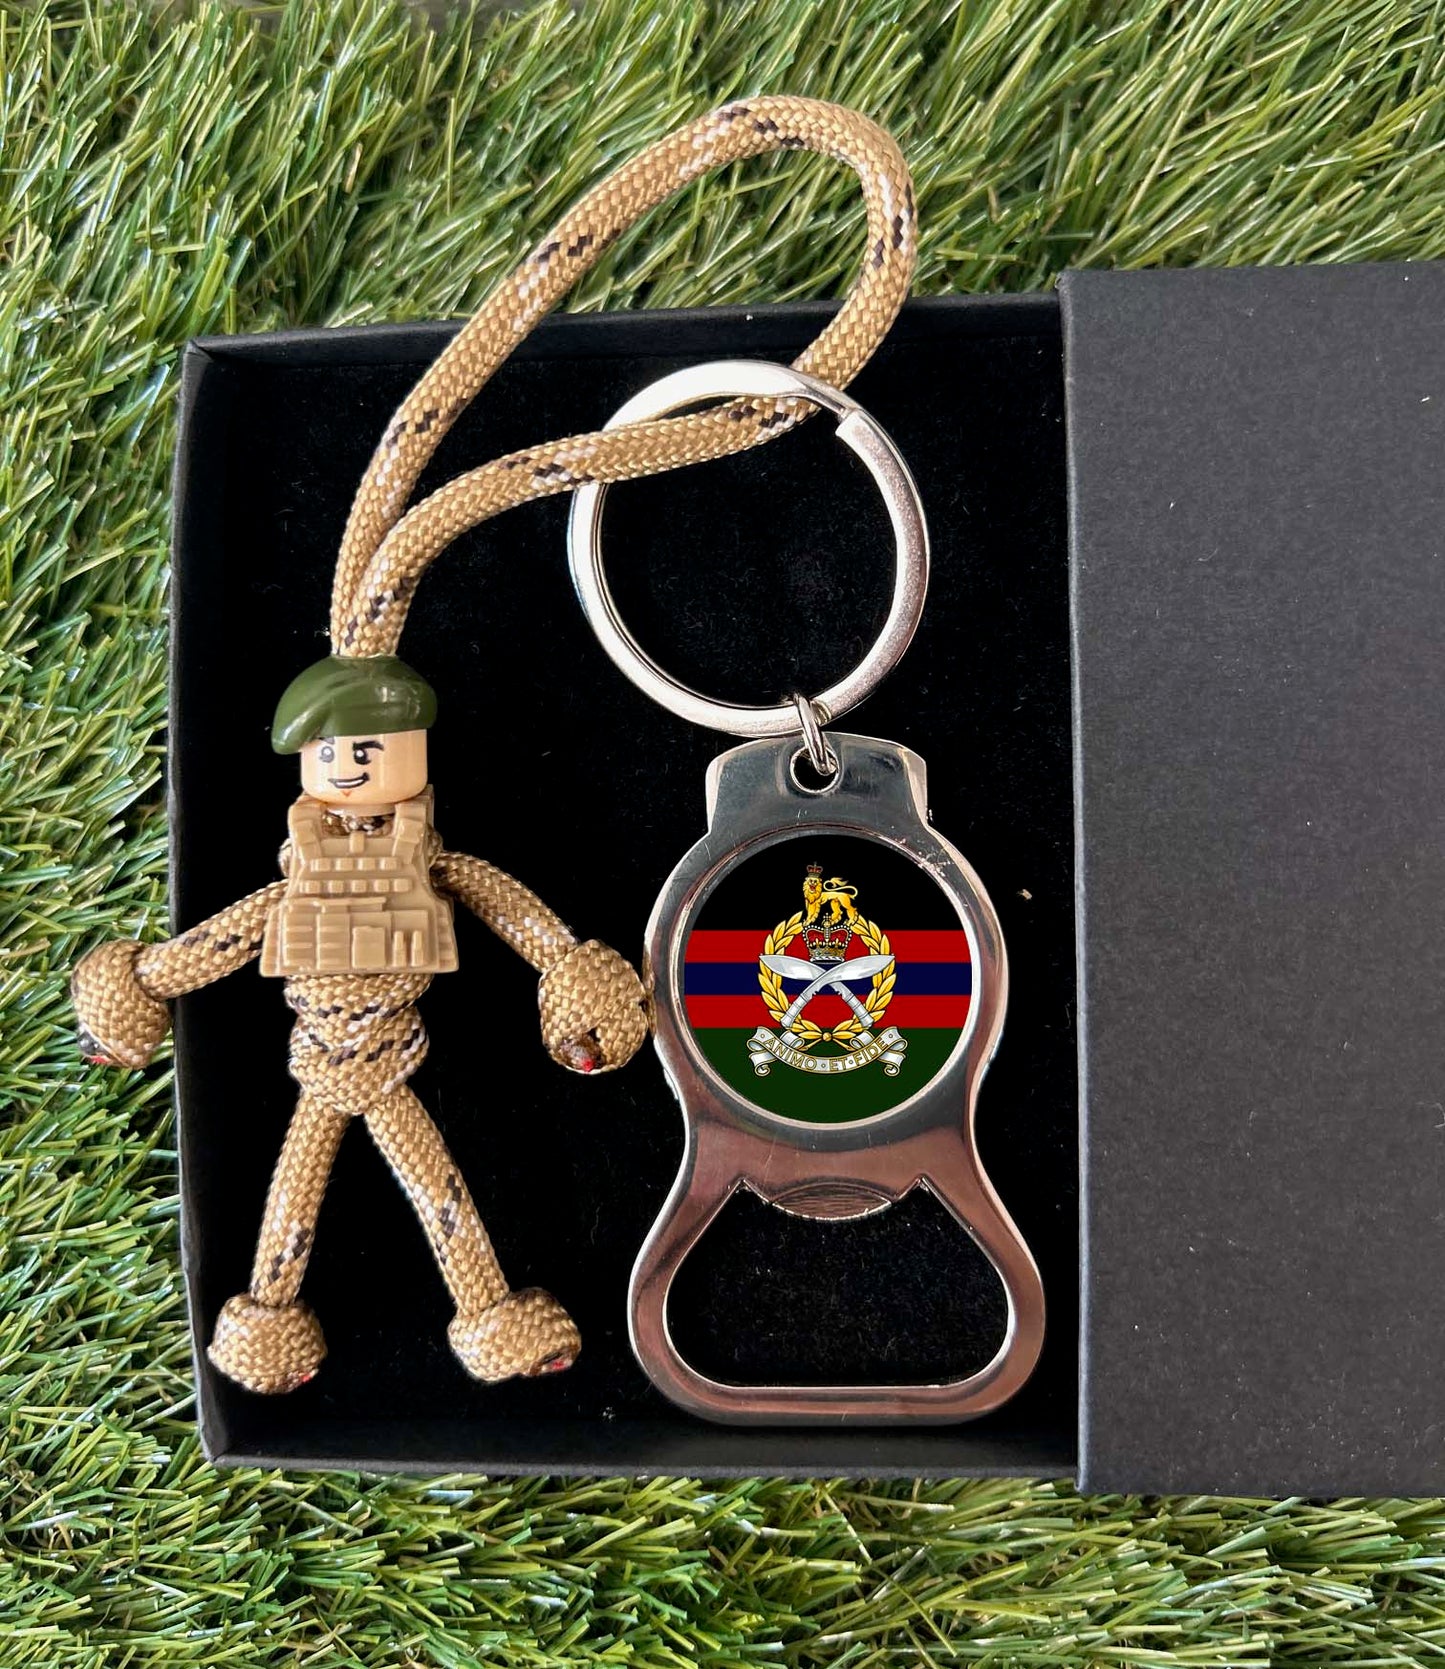 Gurkha SPS - pBuddies' Paracord Keychains and Key Ring Bottle Opener